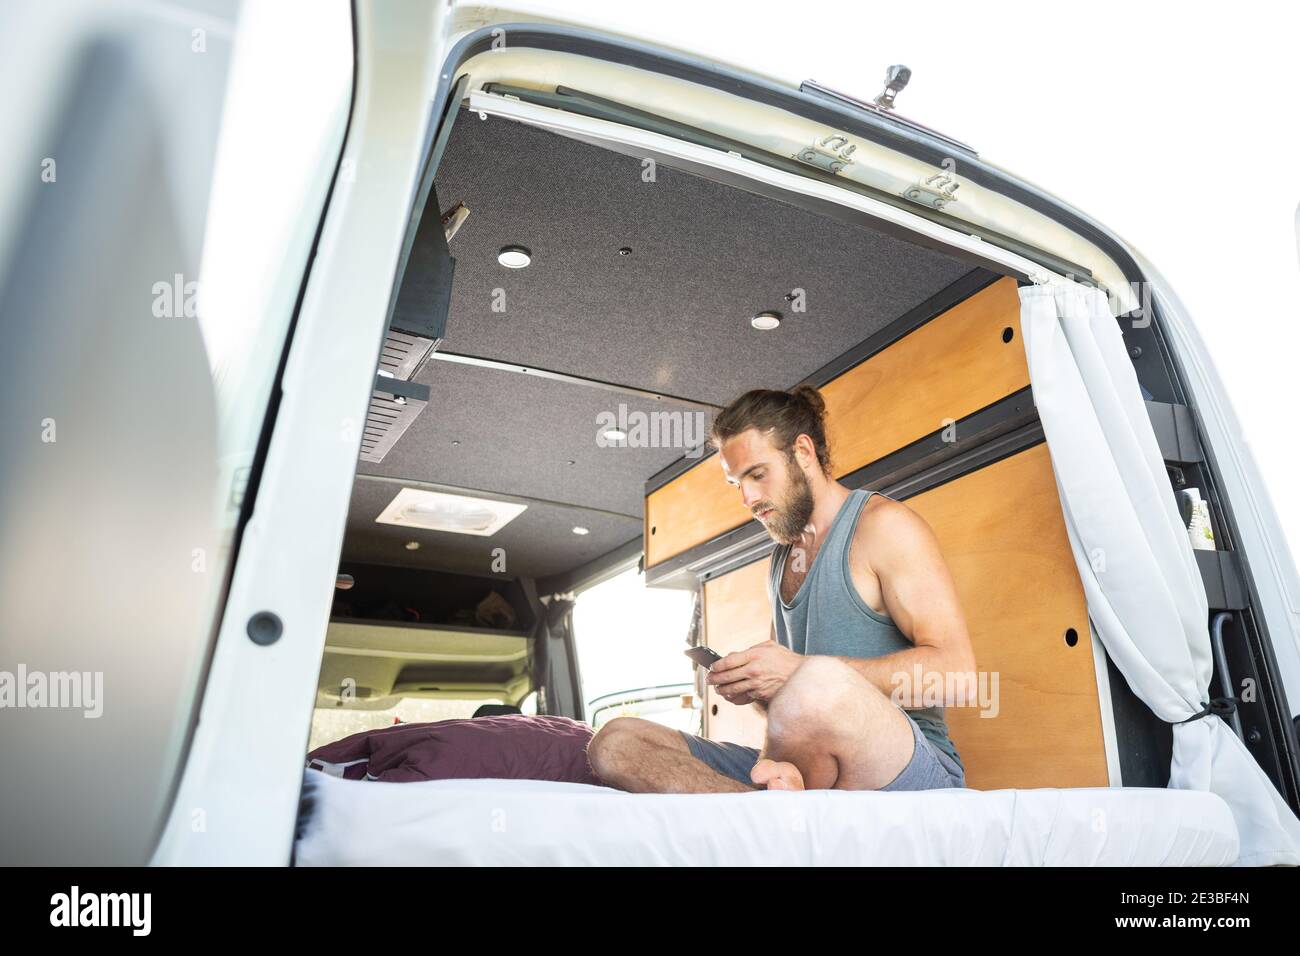 Hombre sentado en su caravana usando un smartphone Foto de stock